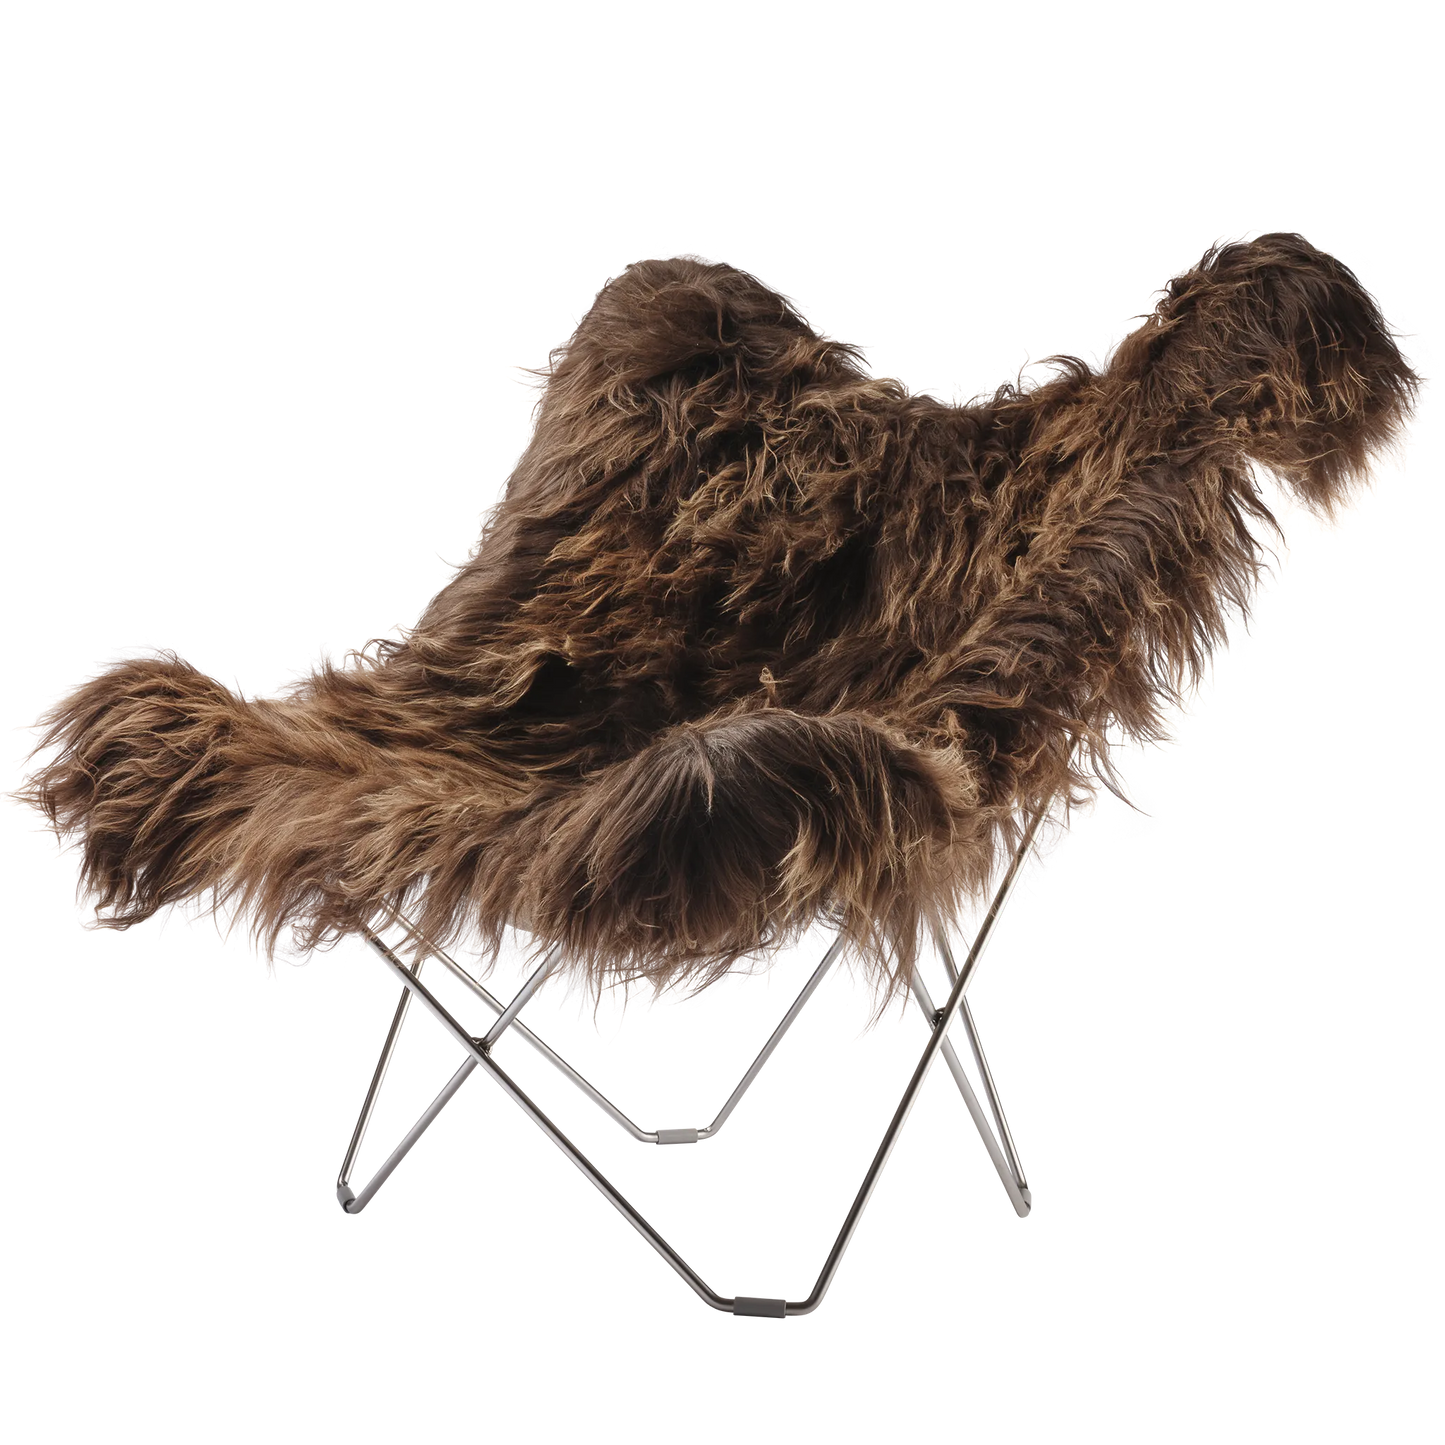 Fladdermusfåtölj av Cuero Design i isländsk fårskinnspäls, Wild Brown. Stålram i matt krom färg av 12 mm svenskt stål